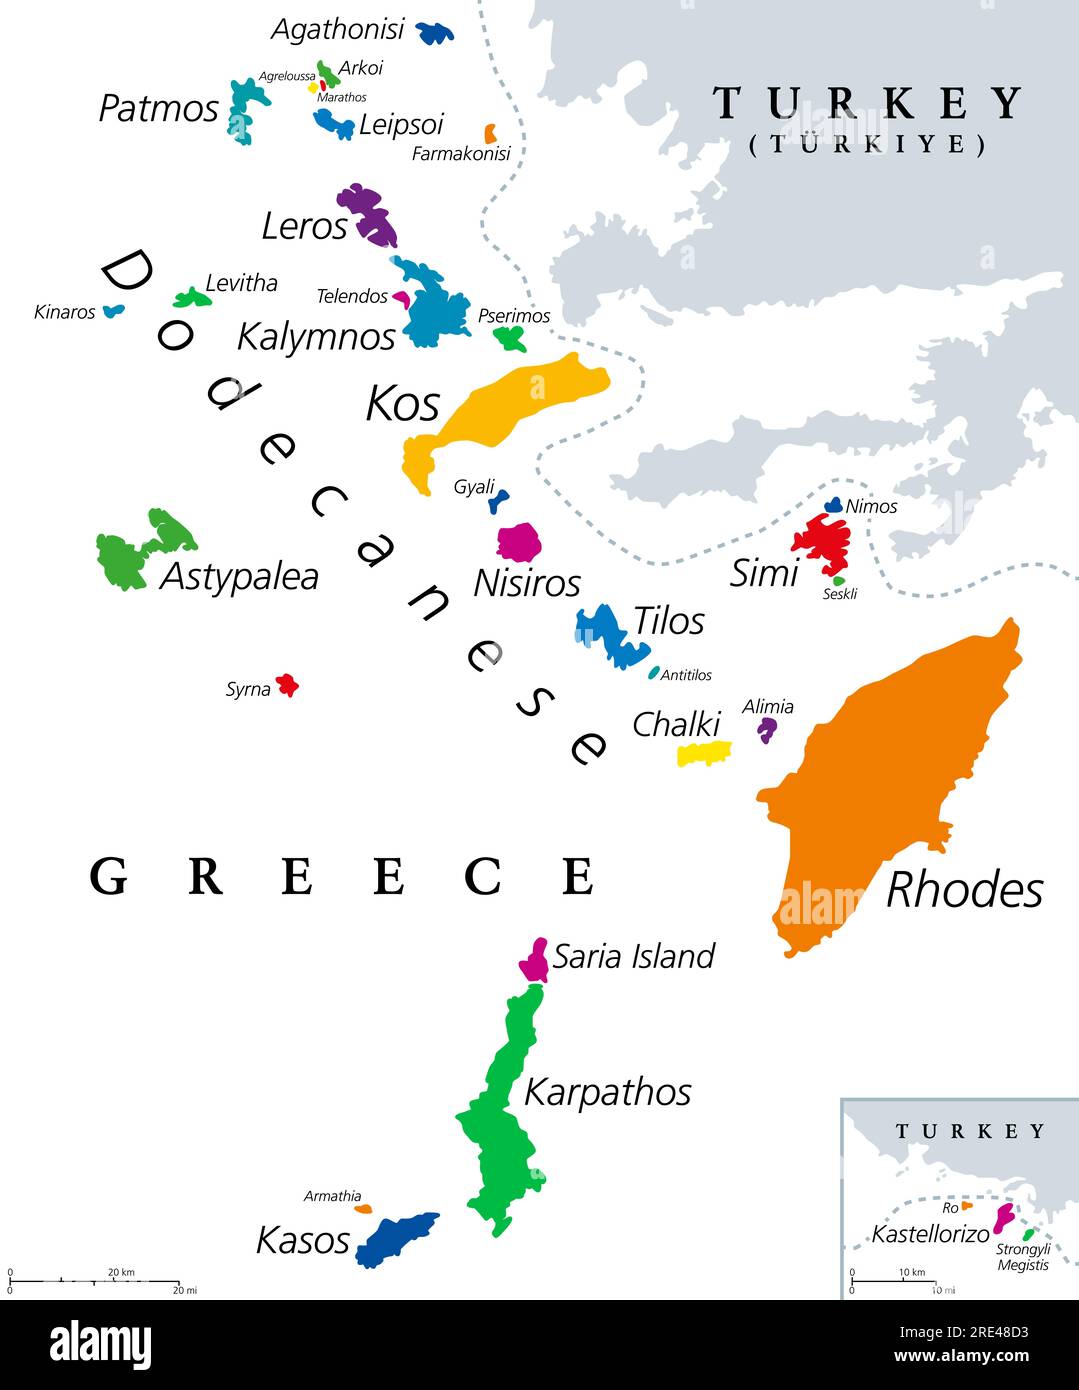 Dodekanesische Inseln, farbige politische Karte. Griechische Inselgruppe im südöstlichen Ägäischen Meer und östlichem Mittelmeer vor der türkischen Küste. Stockfoto